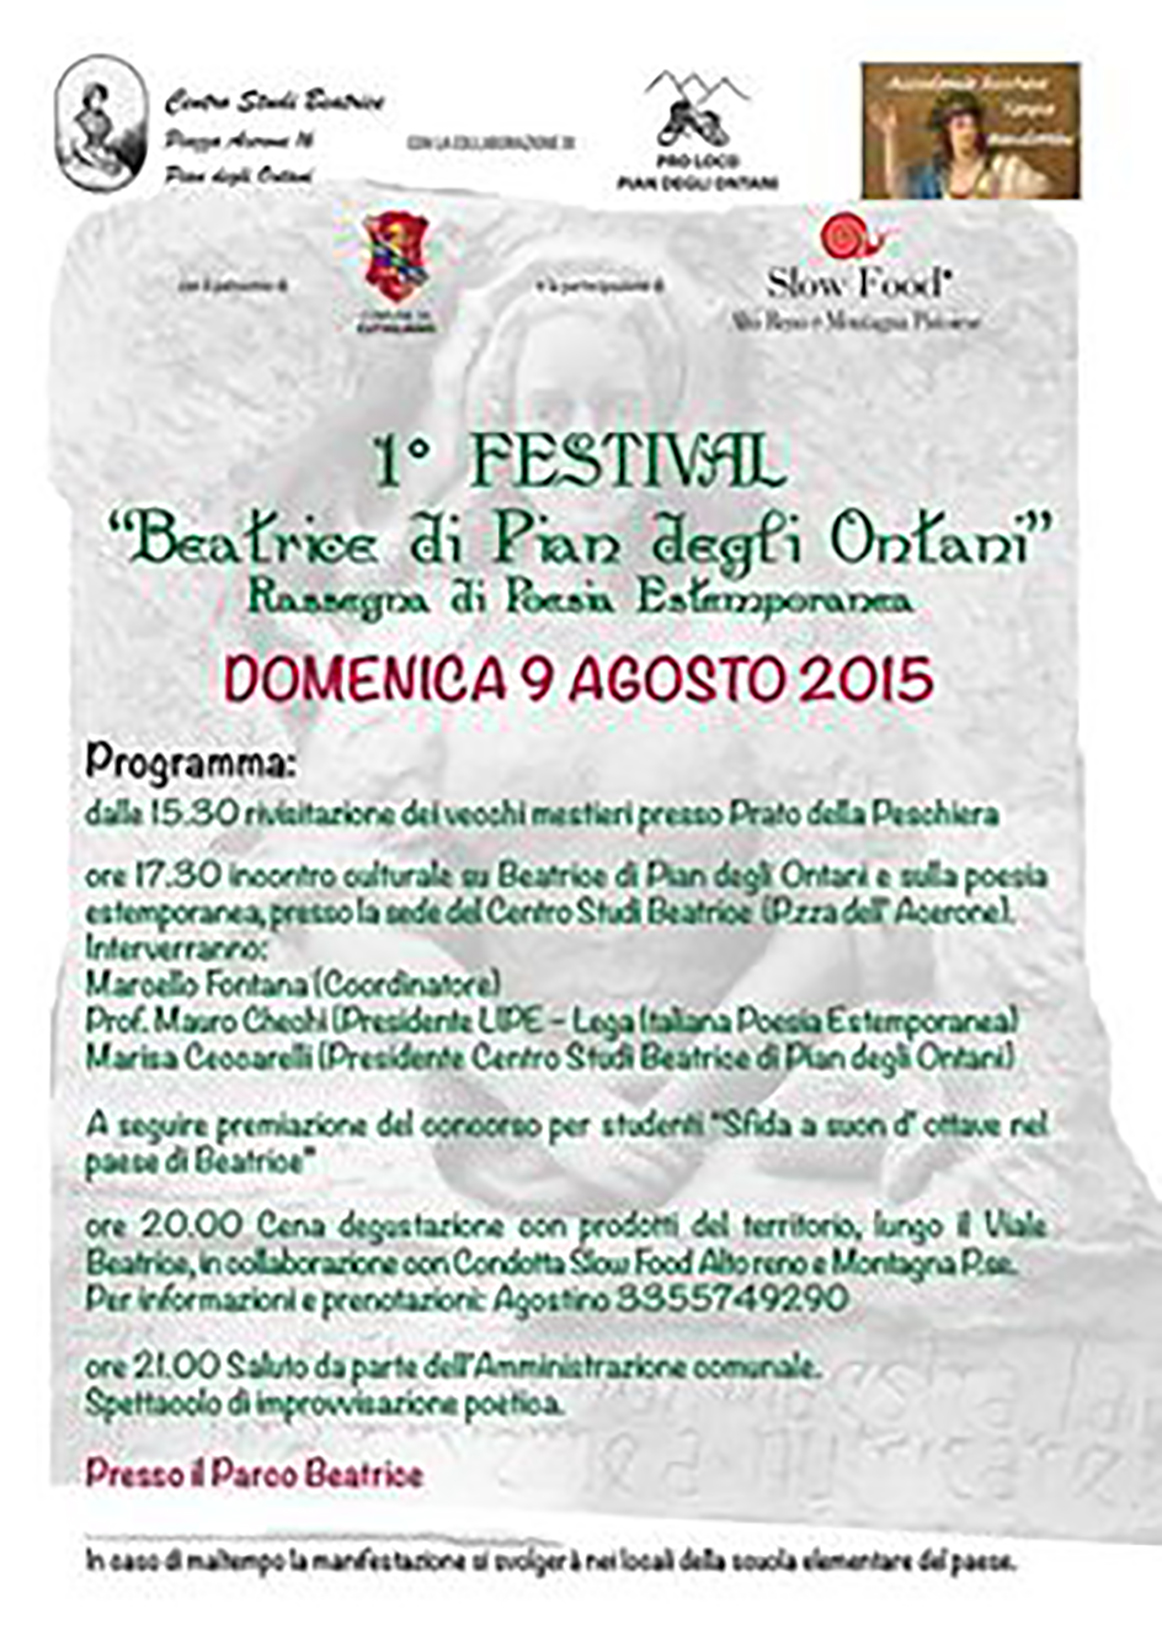 FestivalBeatrice2015